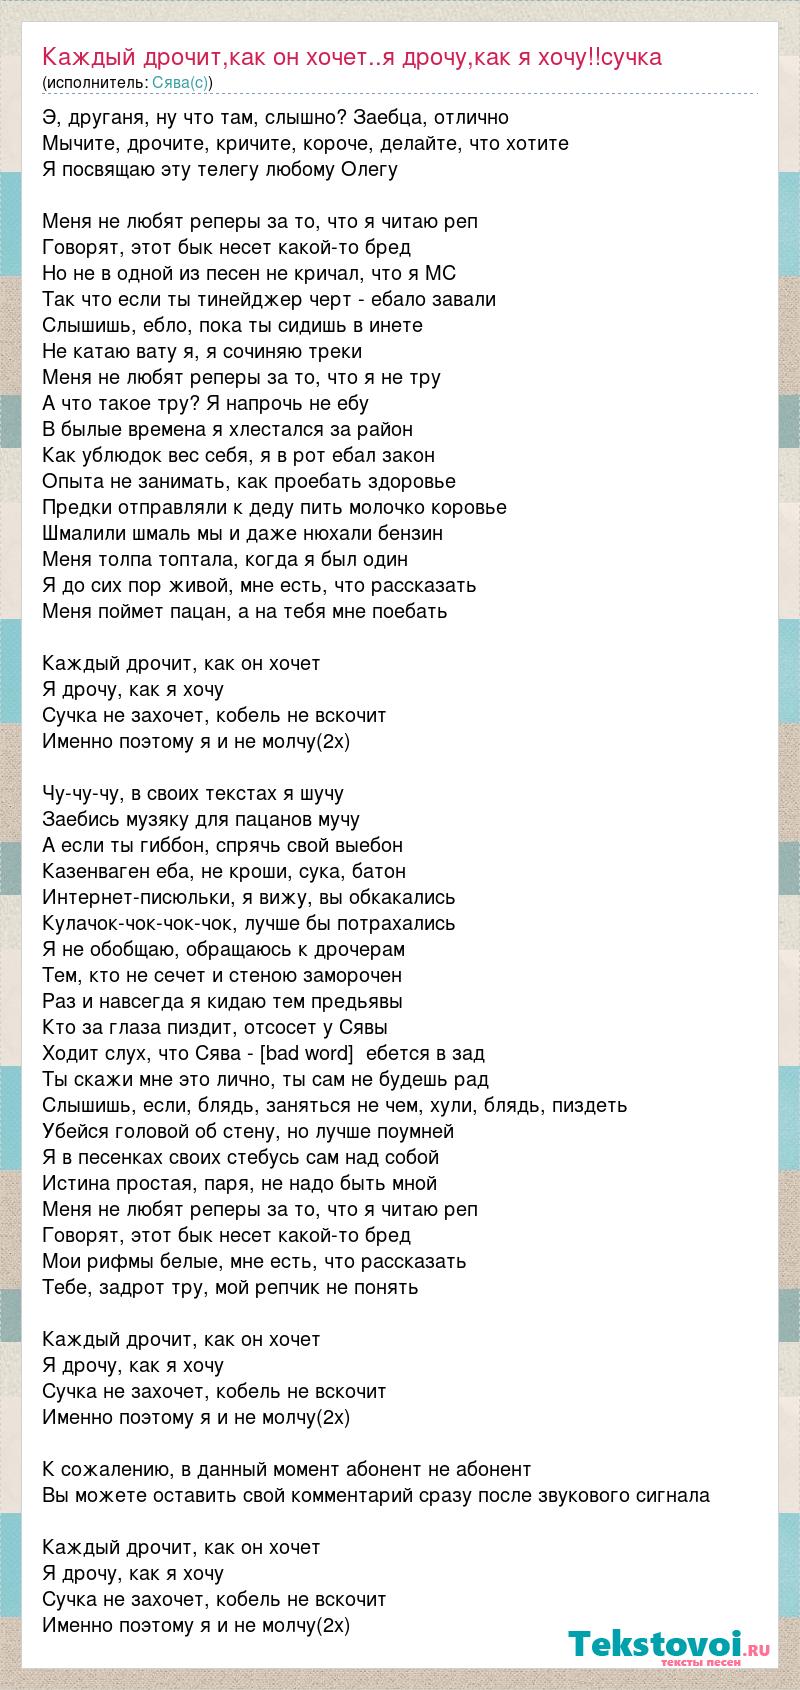 каждый дрочит как он хочет :: Russian slang dictionary